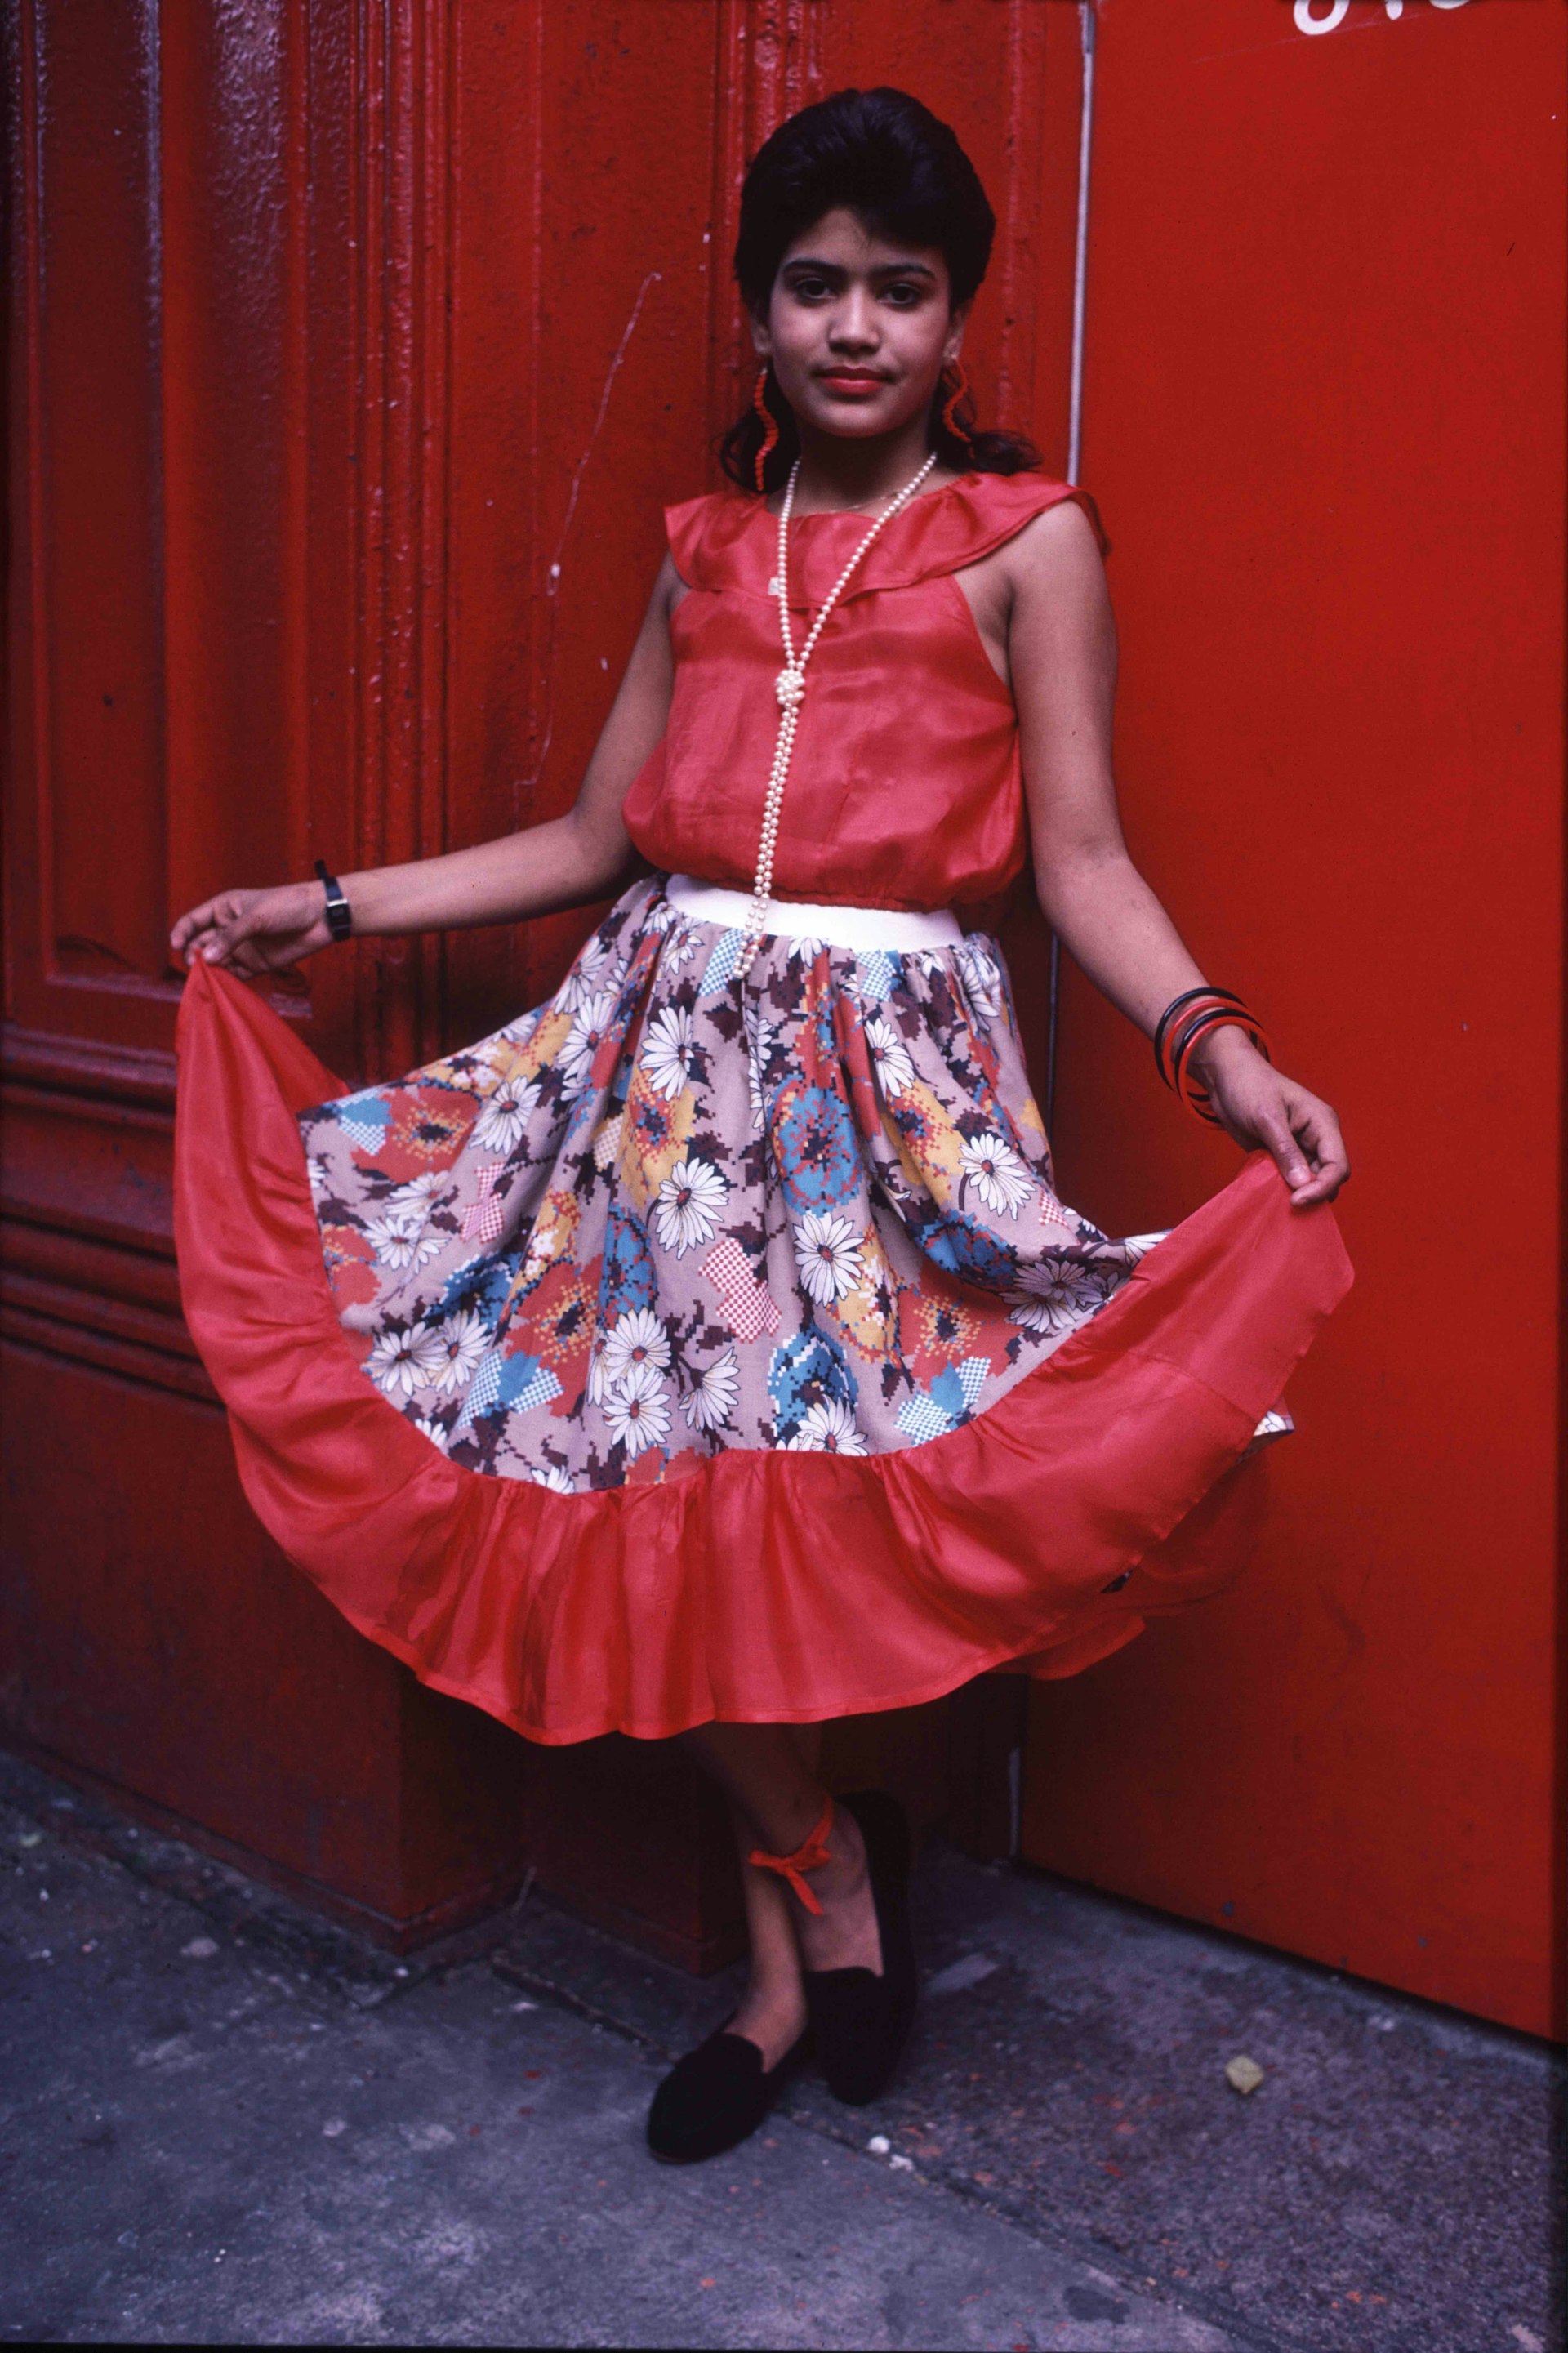 Arlene Gottfried. Girl in Red Dress, 1990’s